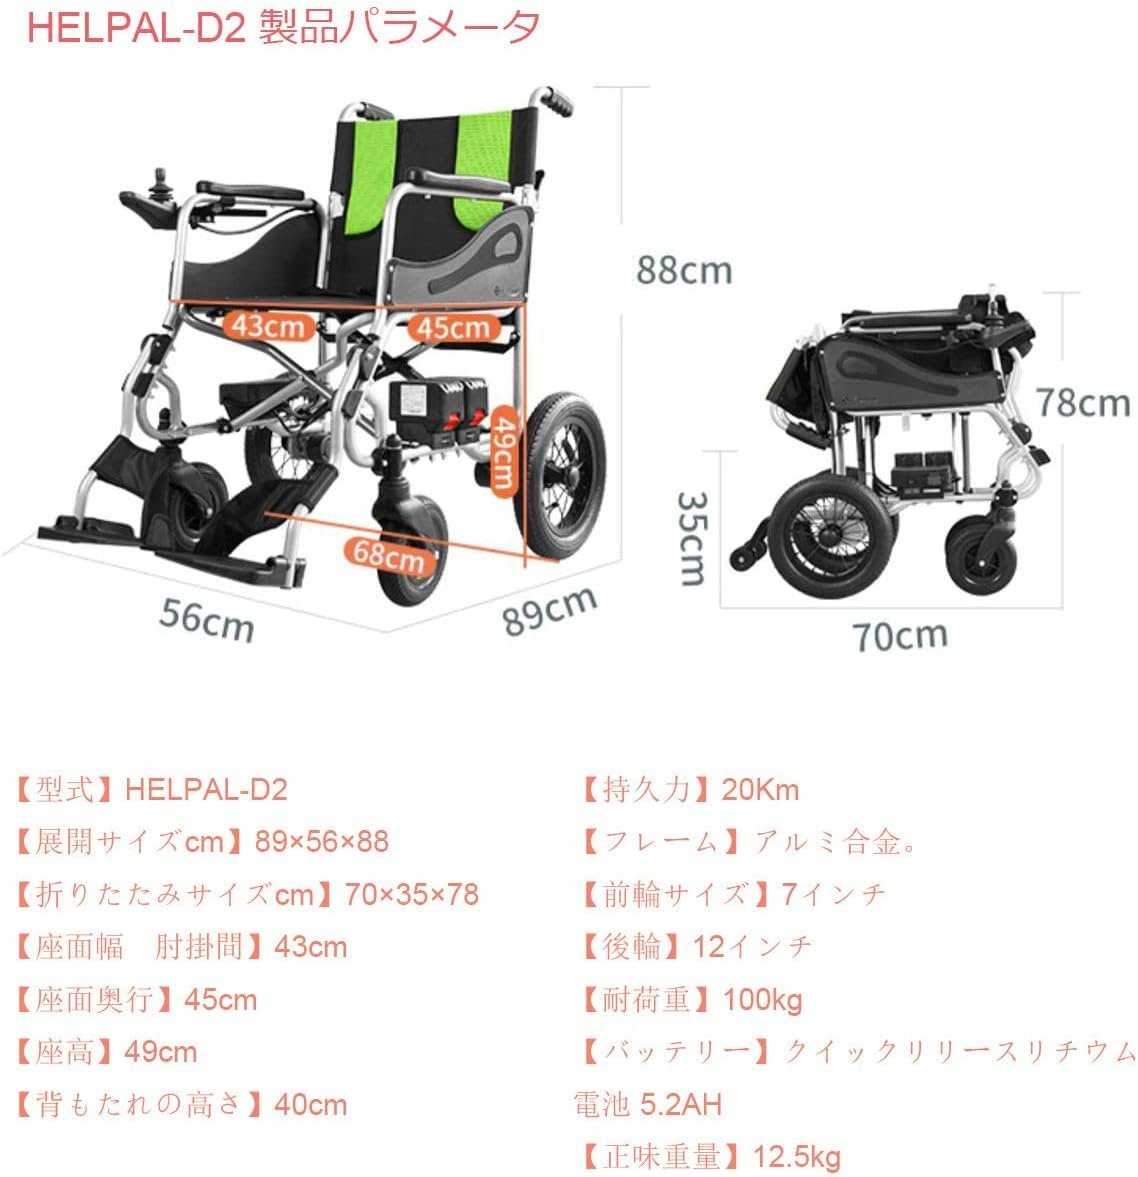  электрический инвалидная коляска супер-легкий стиль, портативный складной / область 20Km нагрузка 100kg 360° джойстик пожилые люди а также инвалид предназначенный 